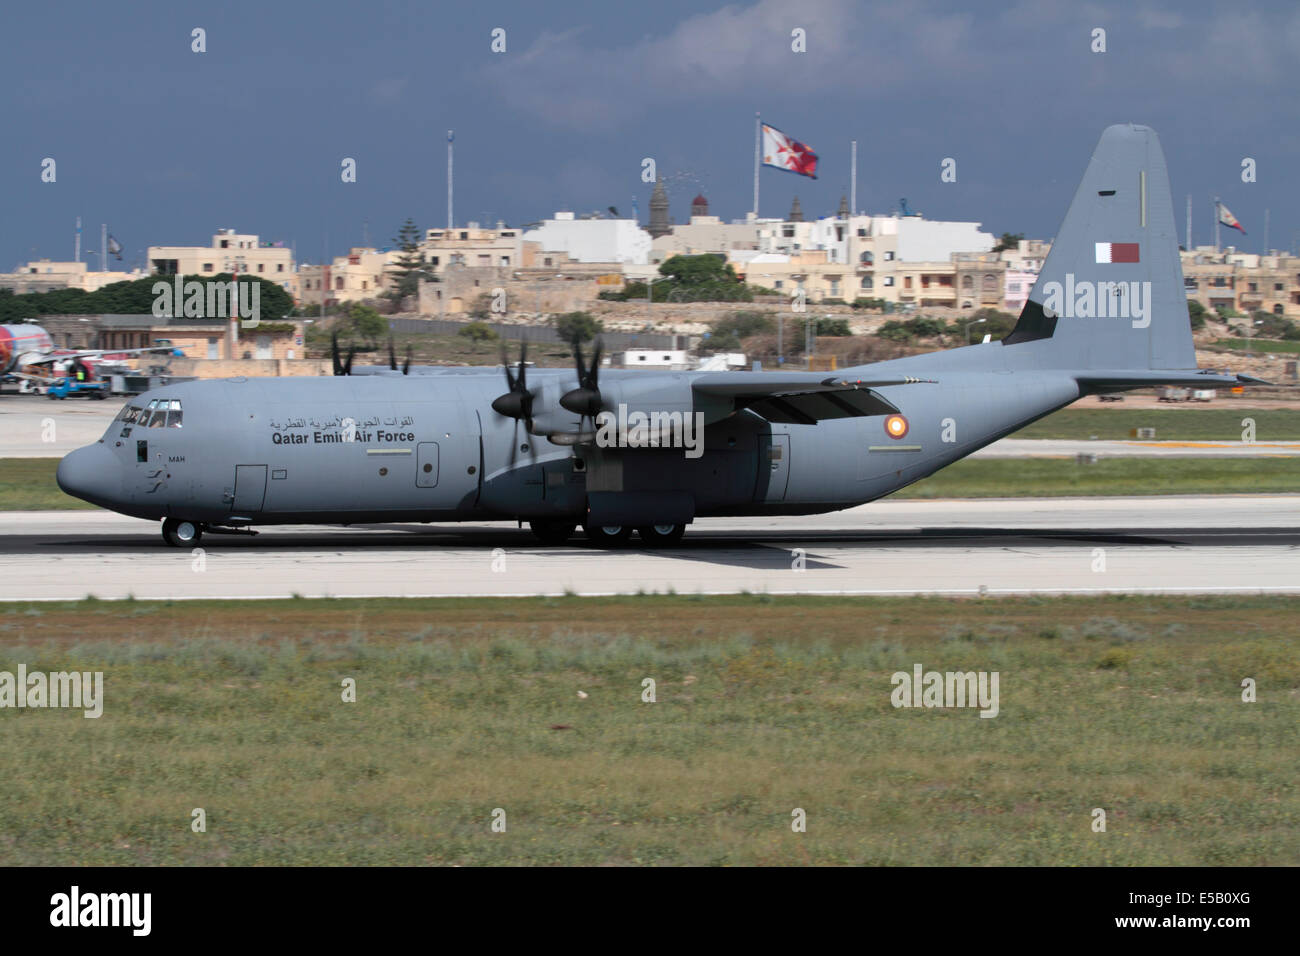 Lockheed Martin C-130J Hercules Militärflugzeug der Qatar Emiri Air Force auf der Landebahn kurz nach der Landung in Malta Stockfoto